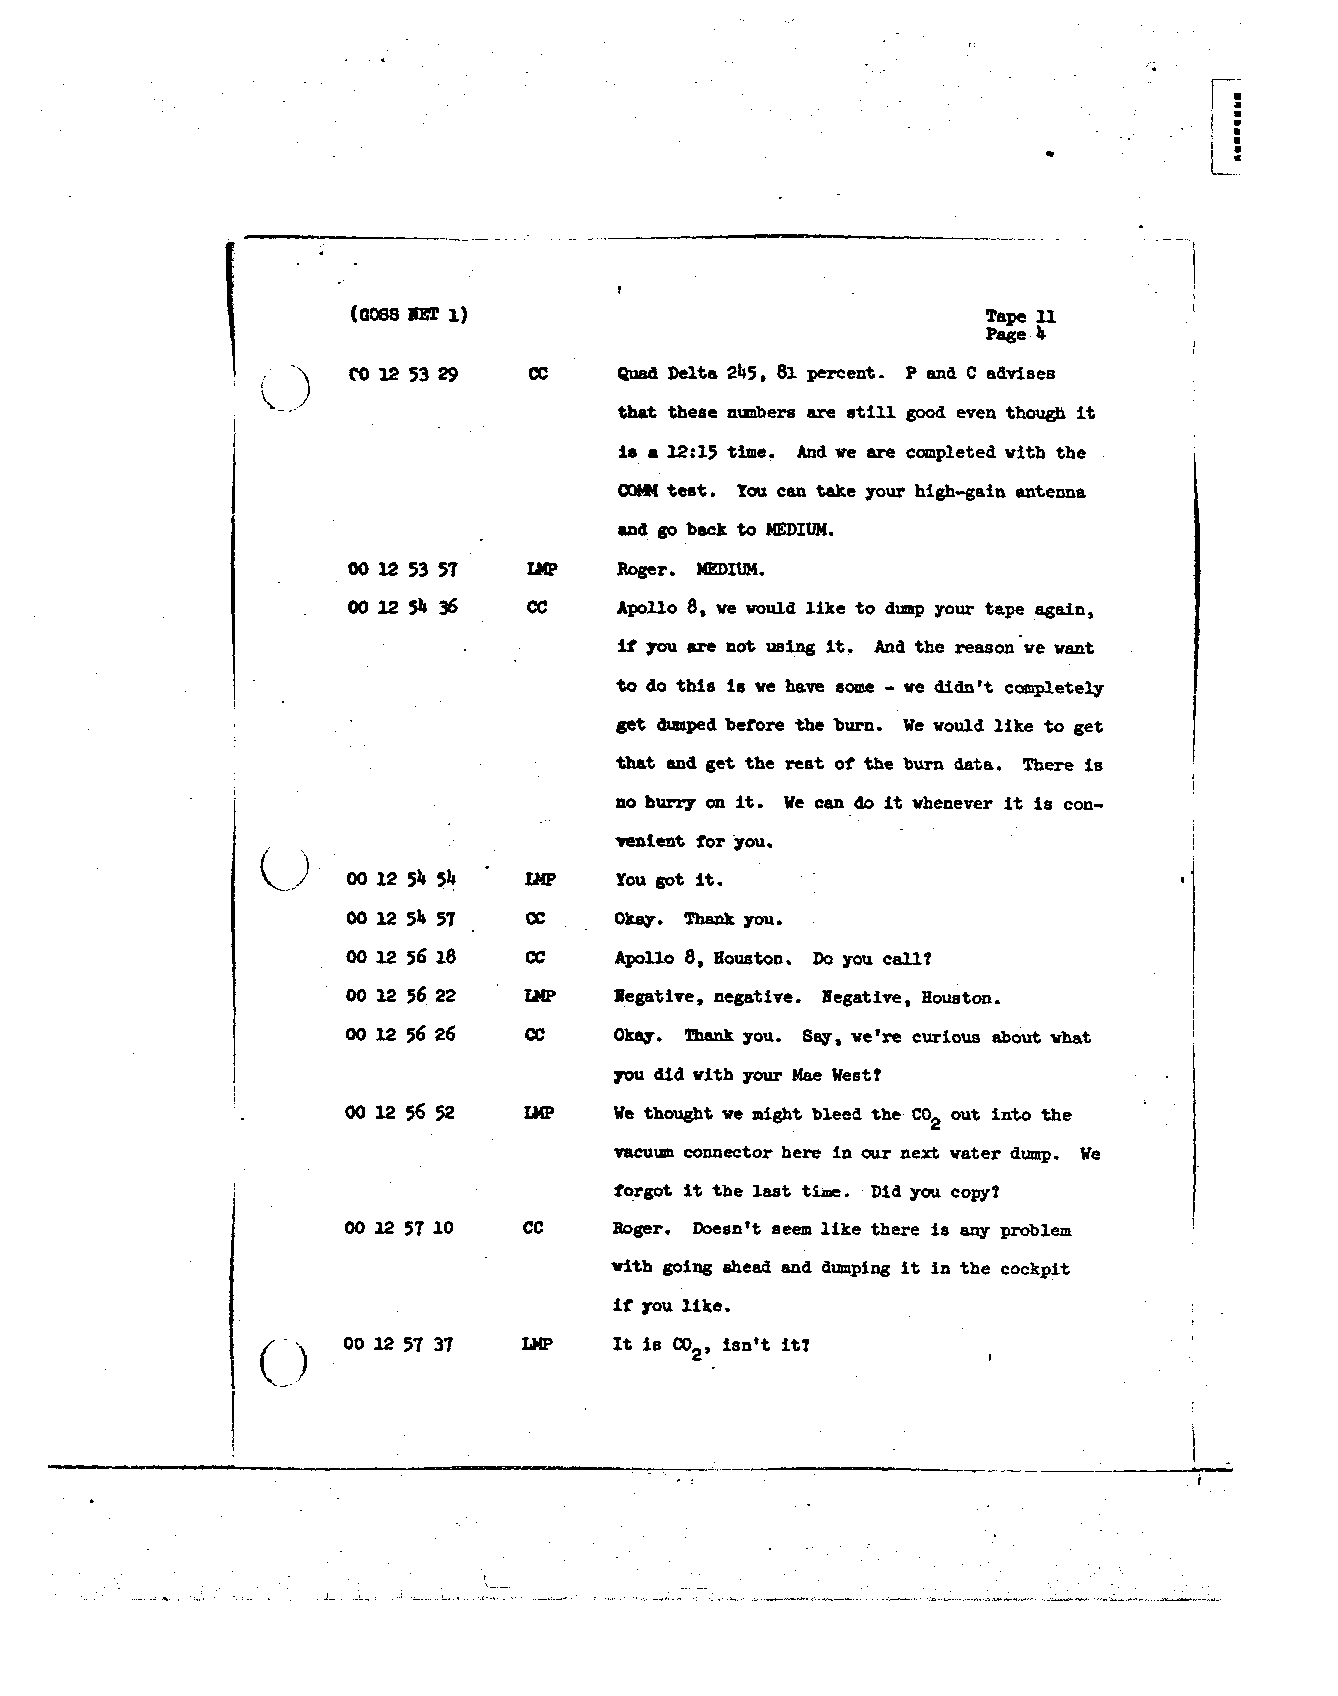 Page 106 of Apollo 8’s original transcript